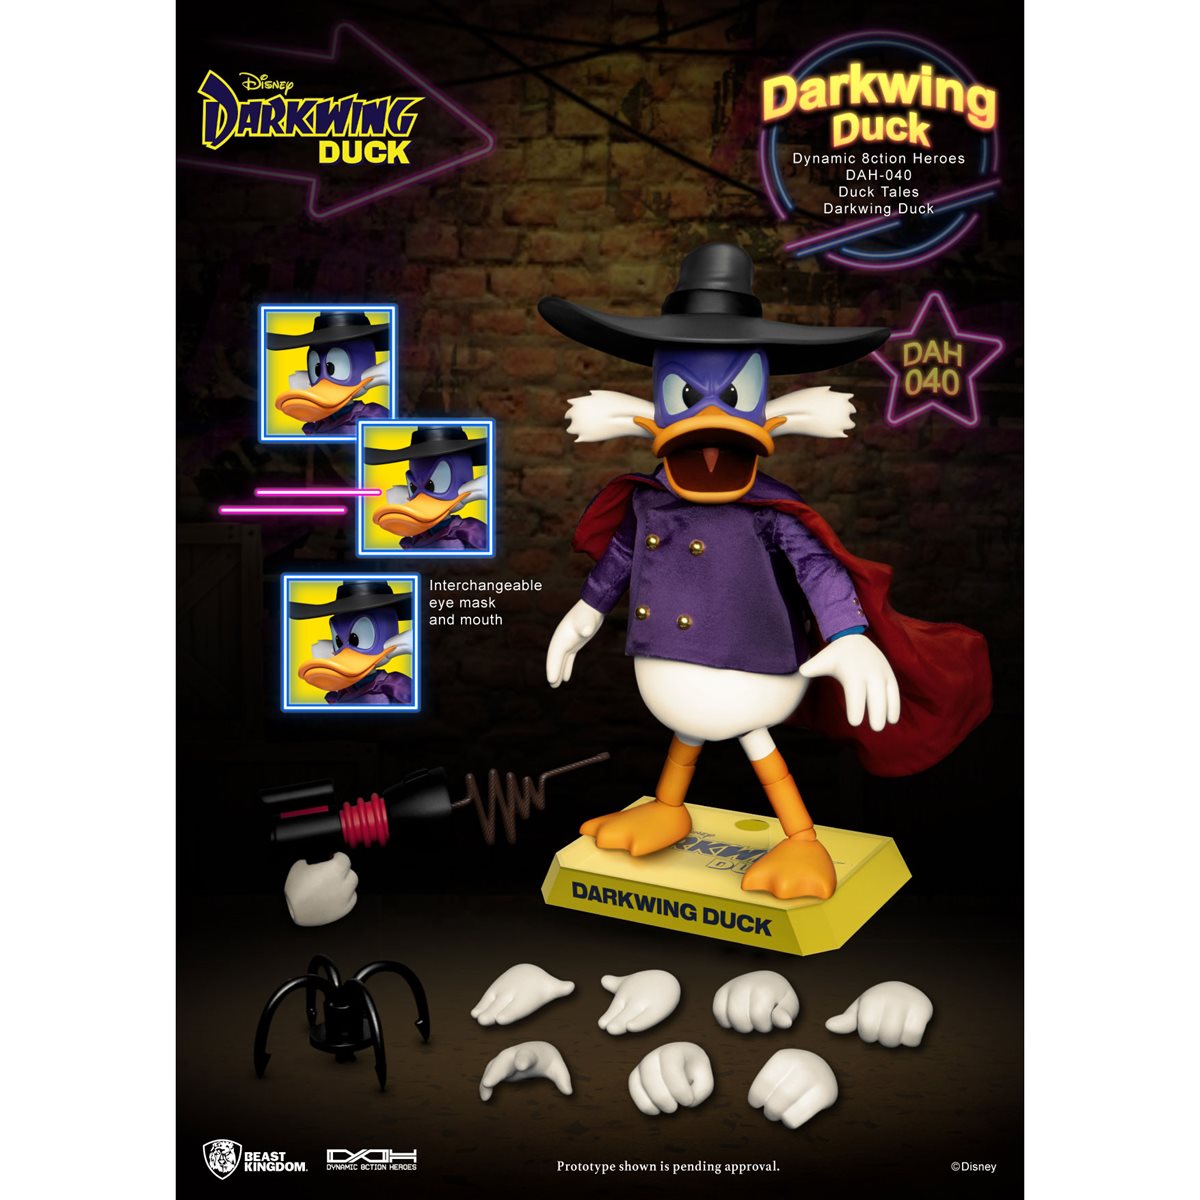 DAH-040 Darkwing Duck Dynamic 8-Ction Heroes Action Figure (Pre-Order)